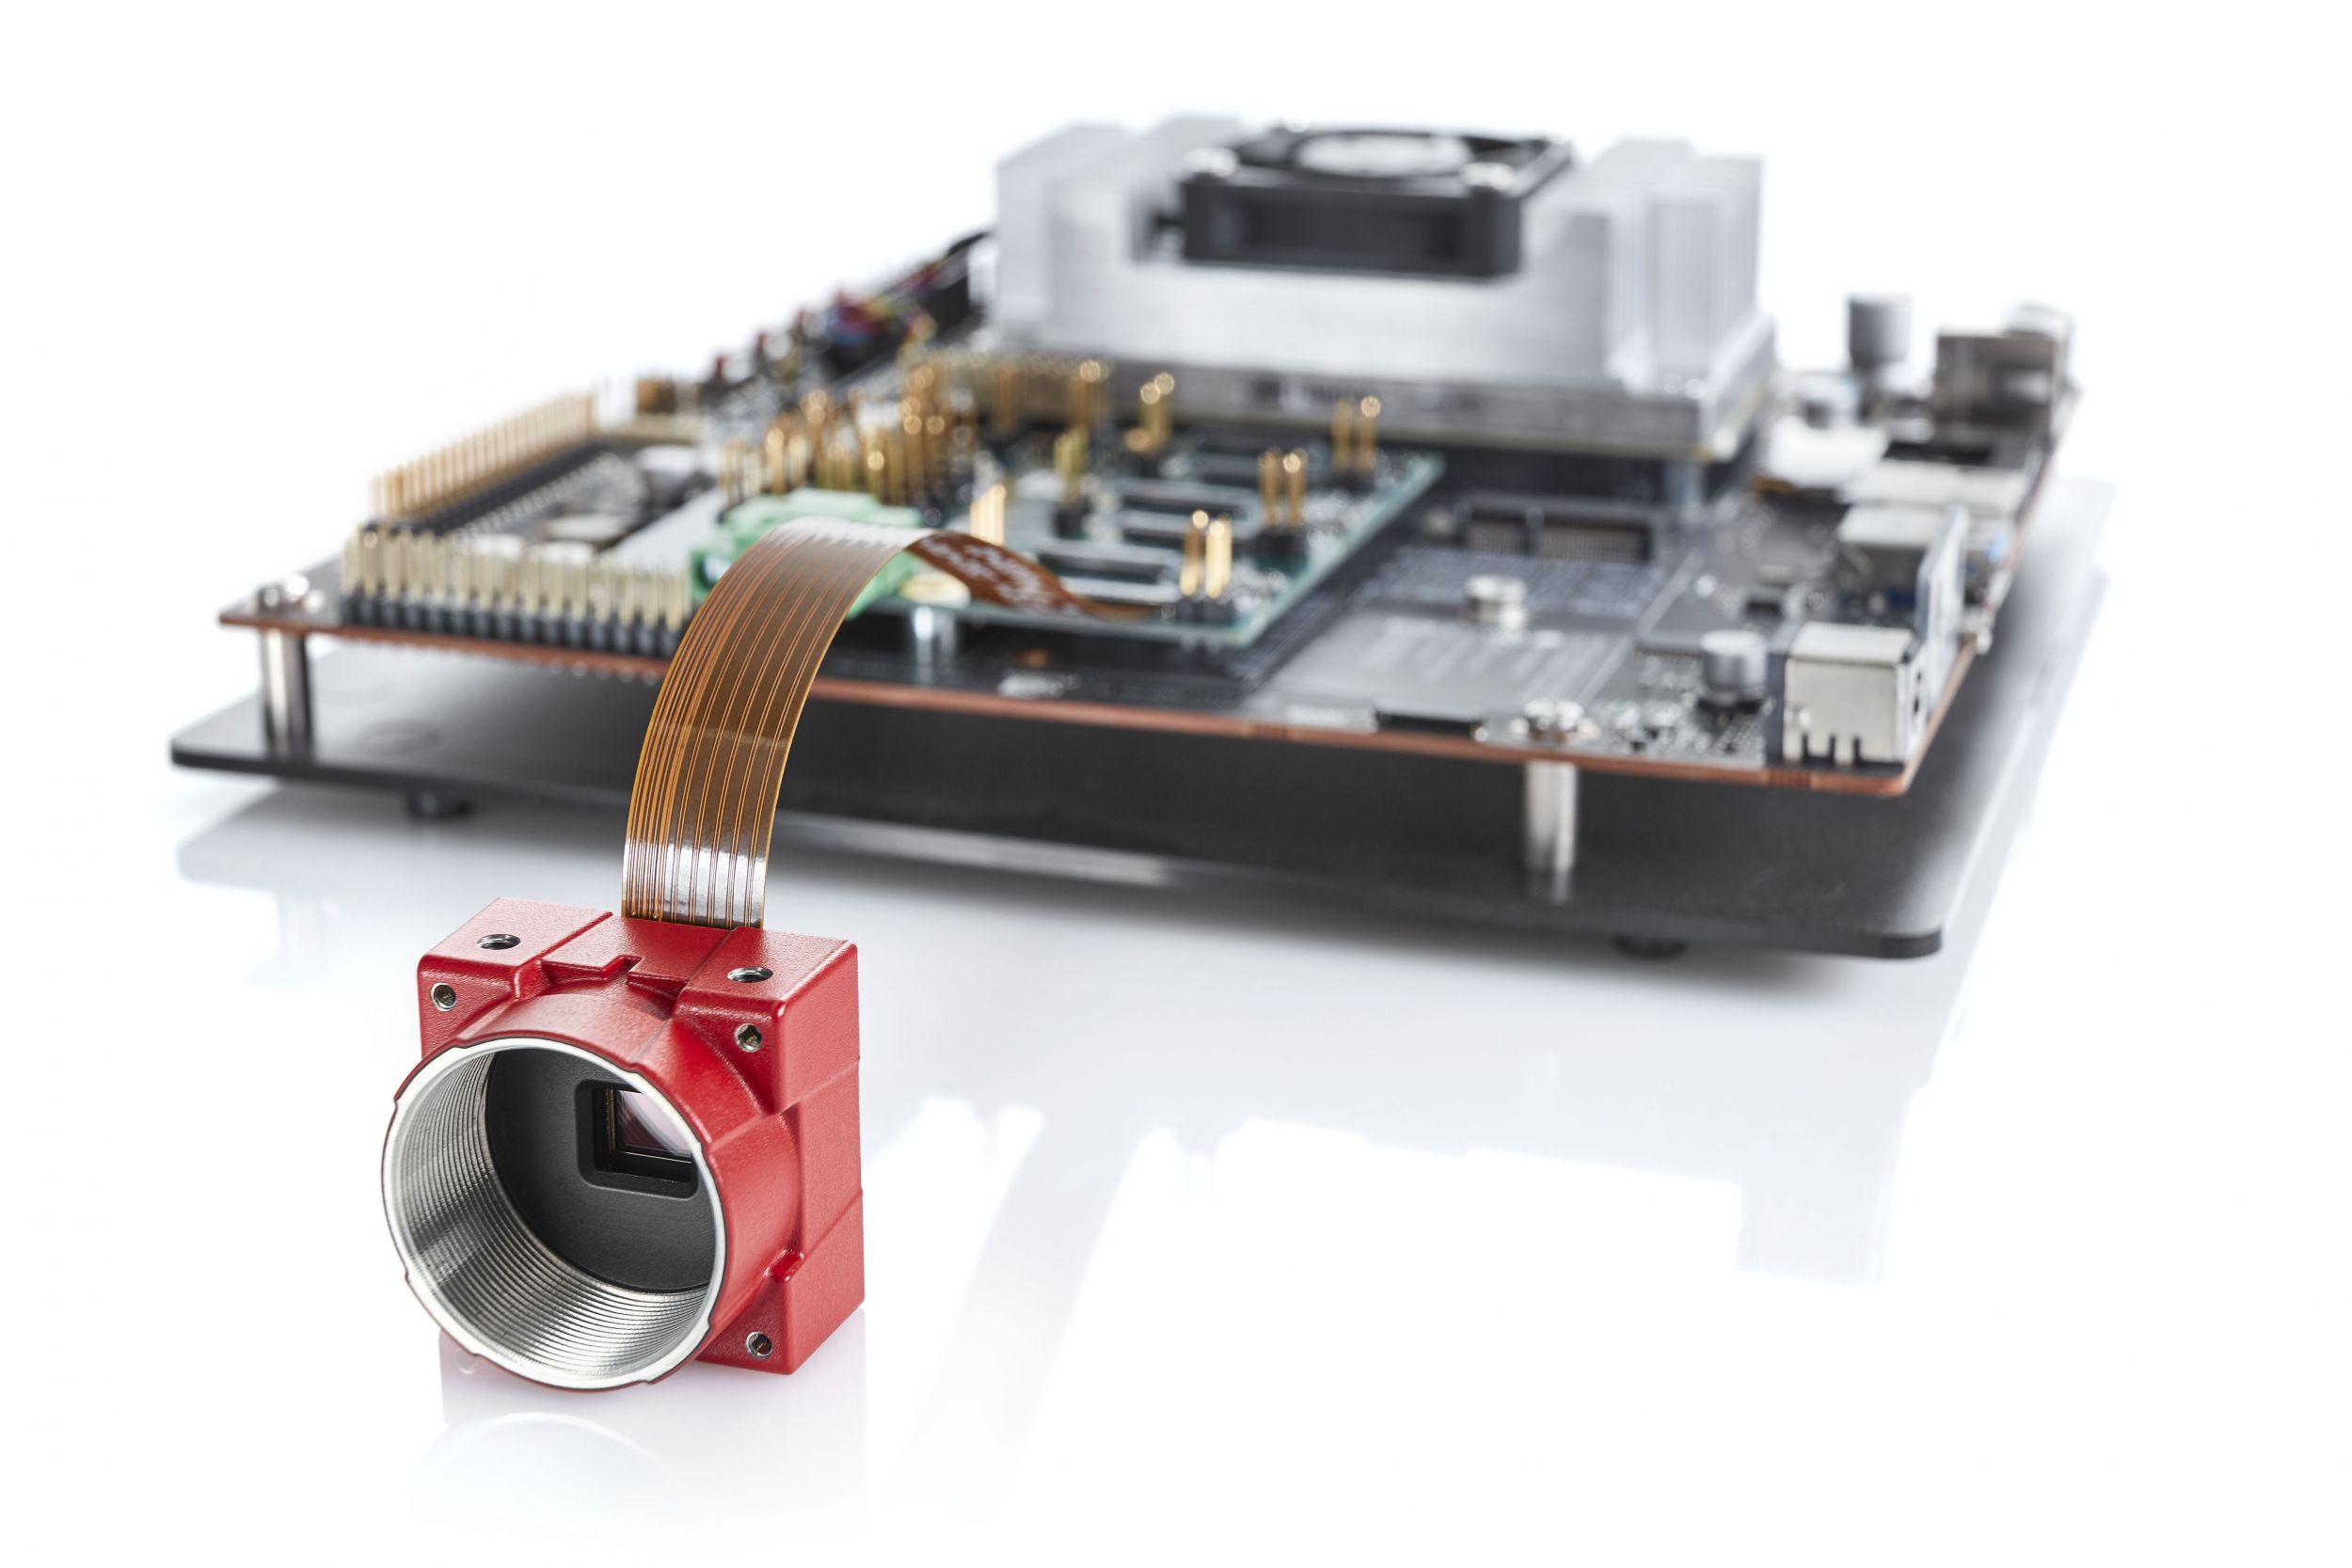 Der Alvium SoC beherbergt eine Verarbeitungsbibliothek und einen Image-Signal-Prozessor (ISP), mit dem optimierungsfunktionen bereits in der Kamera angewendet werden können. Zur Markteinführung der Alvium-Serie werden zunächst die NXP i.MX6 und Nvidia-Jetson-Plattformen unterstützt. (Bild: Allied Vision Technologies GmbH)